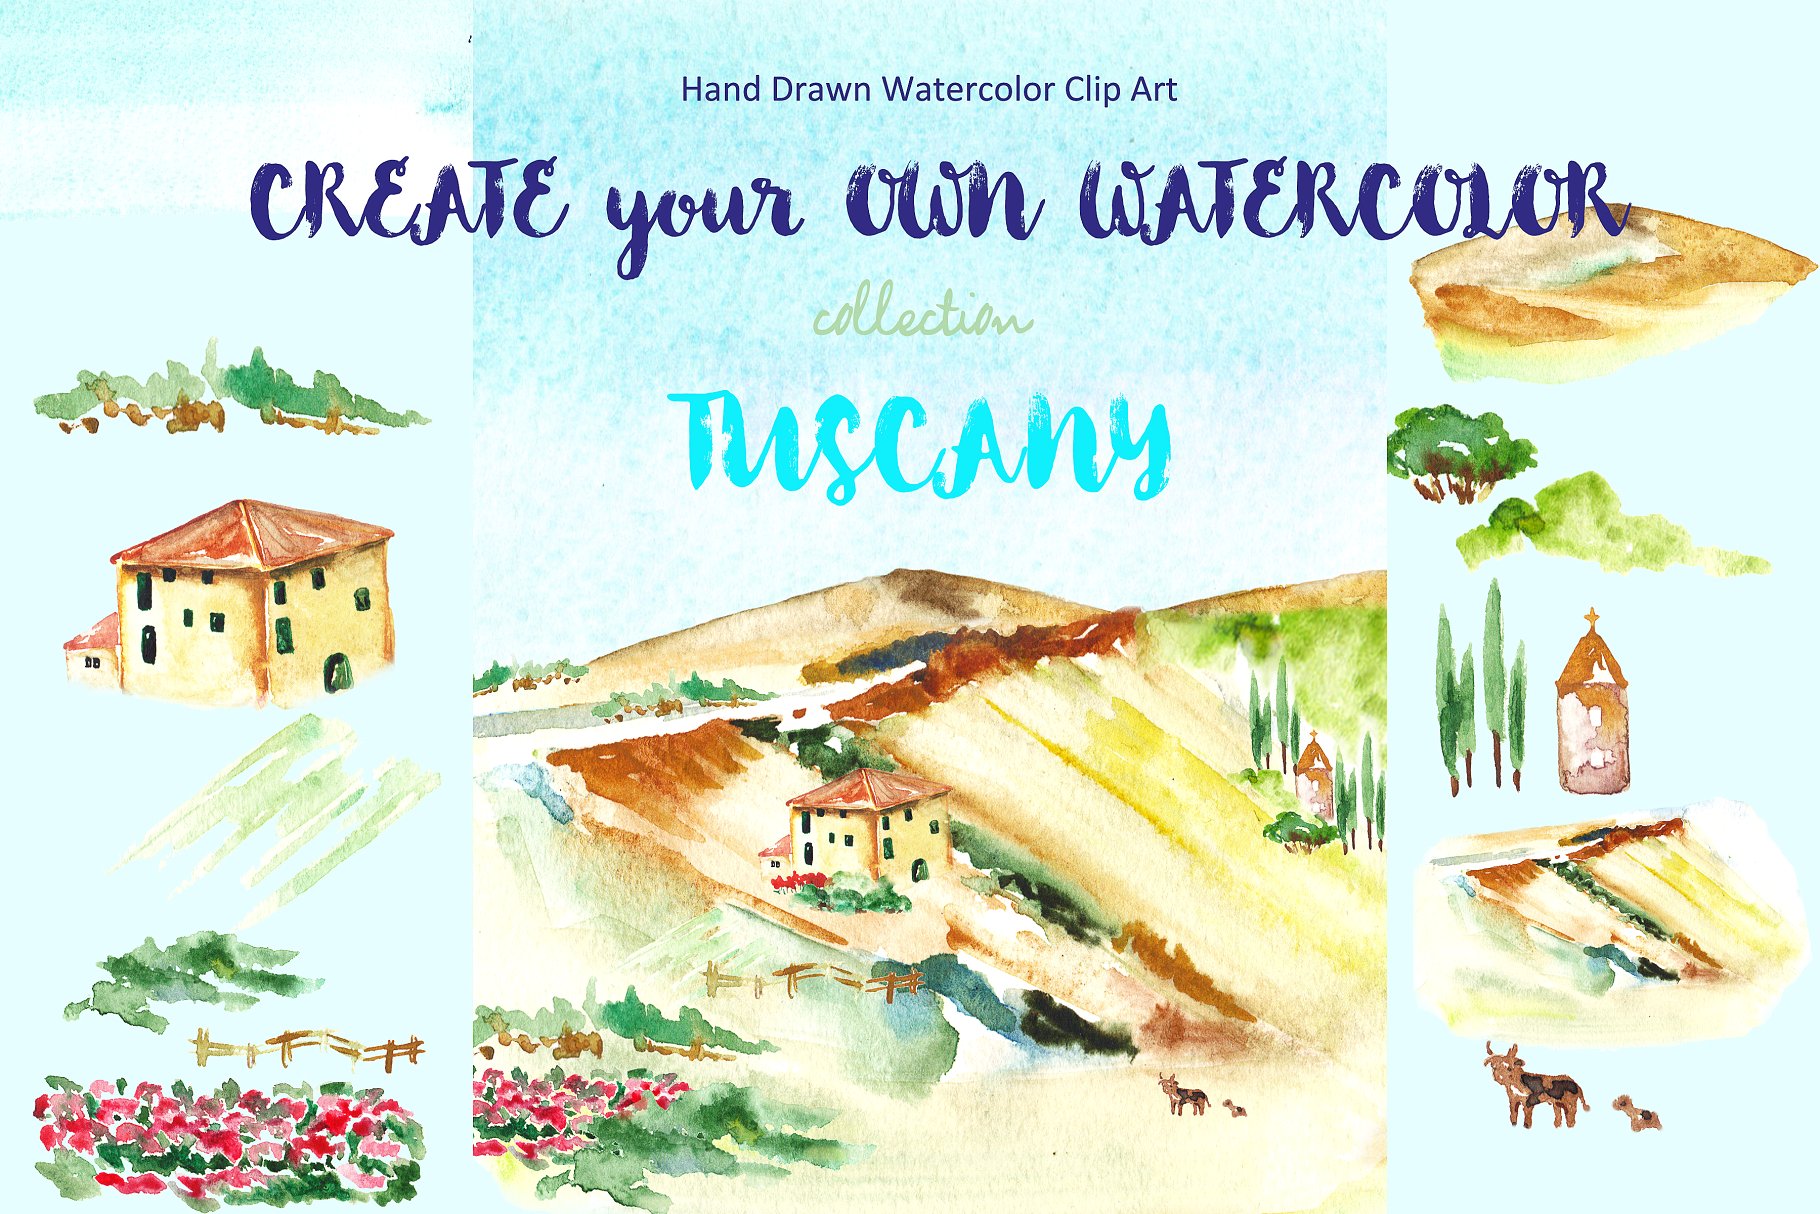 托斯卡纳景观水彩剪贴画 Landscape Tuscany Watercolor clipart插图(3)